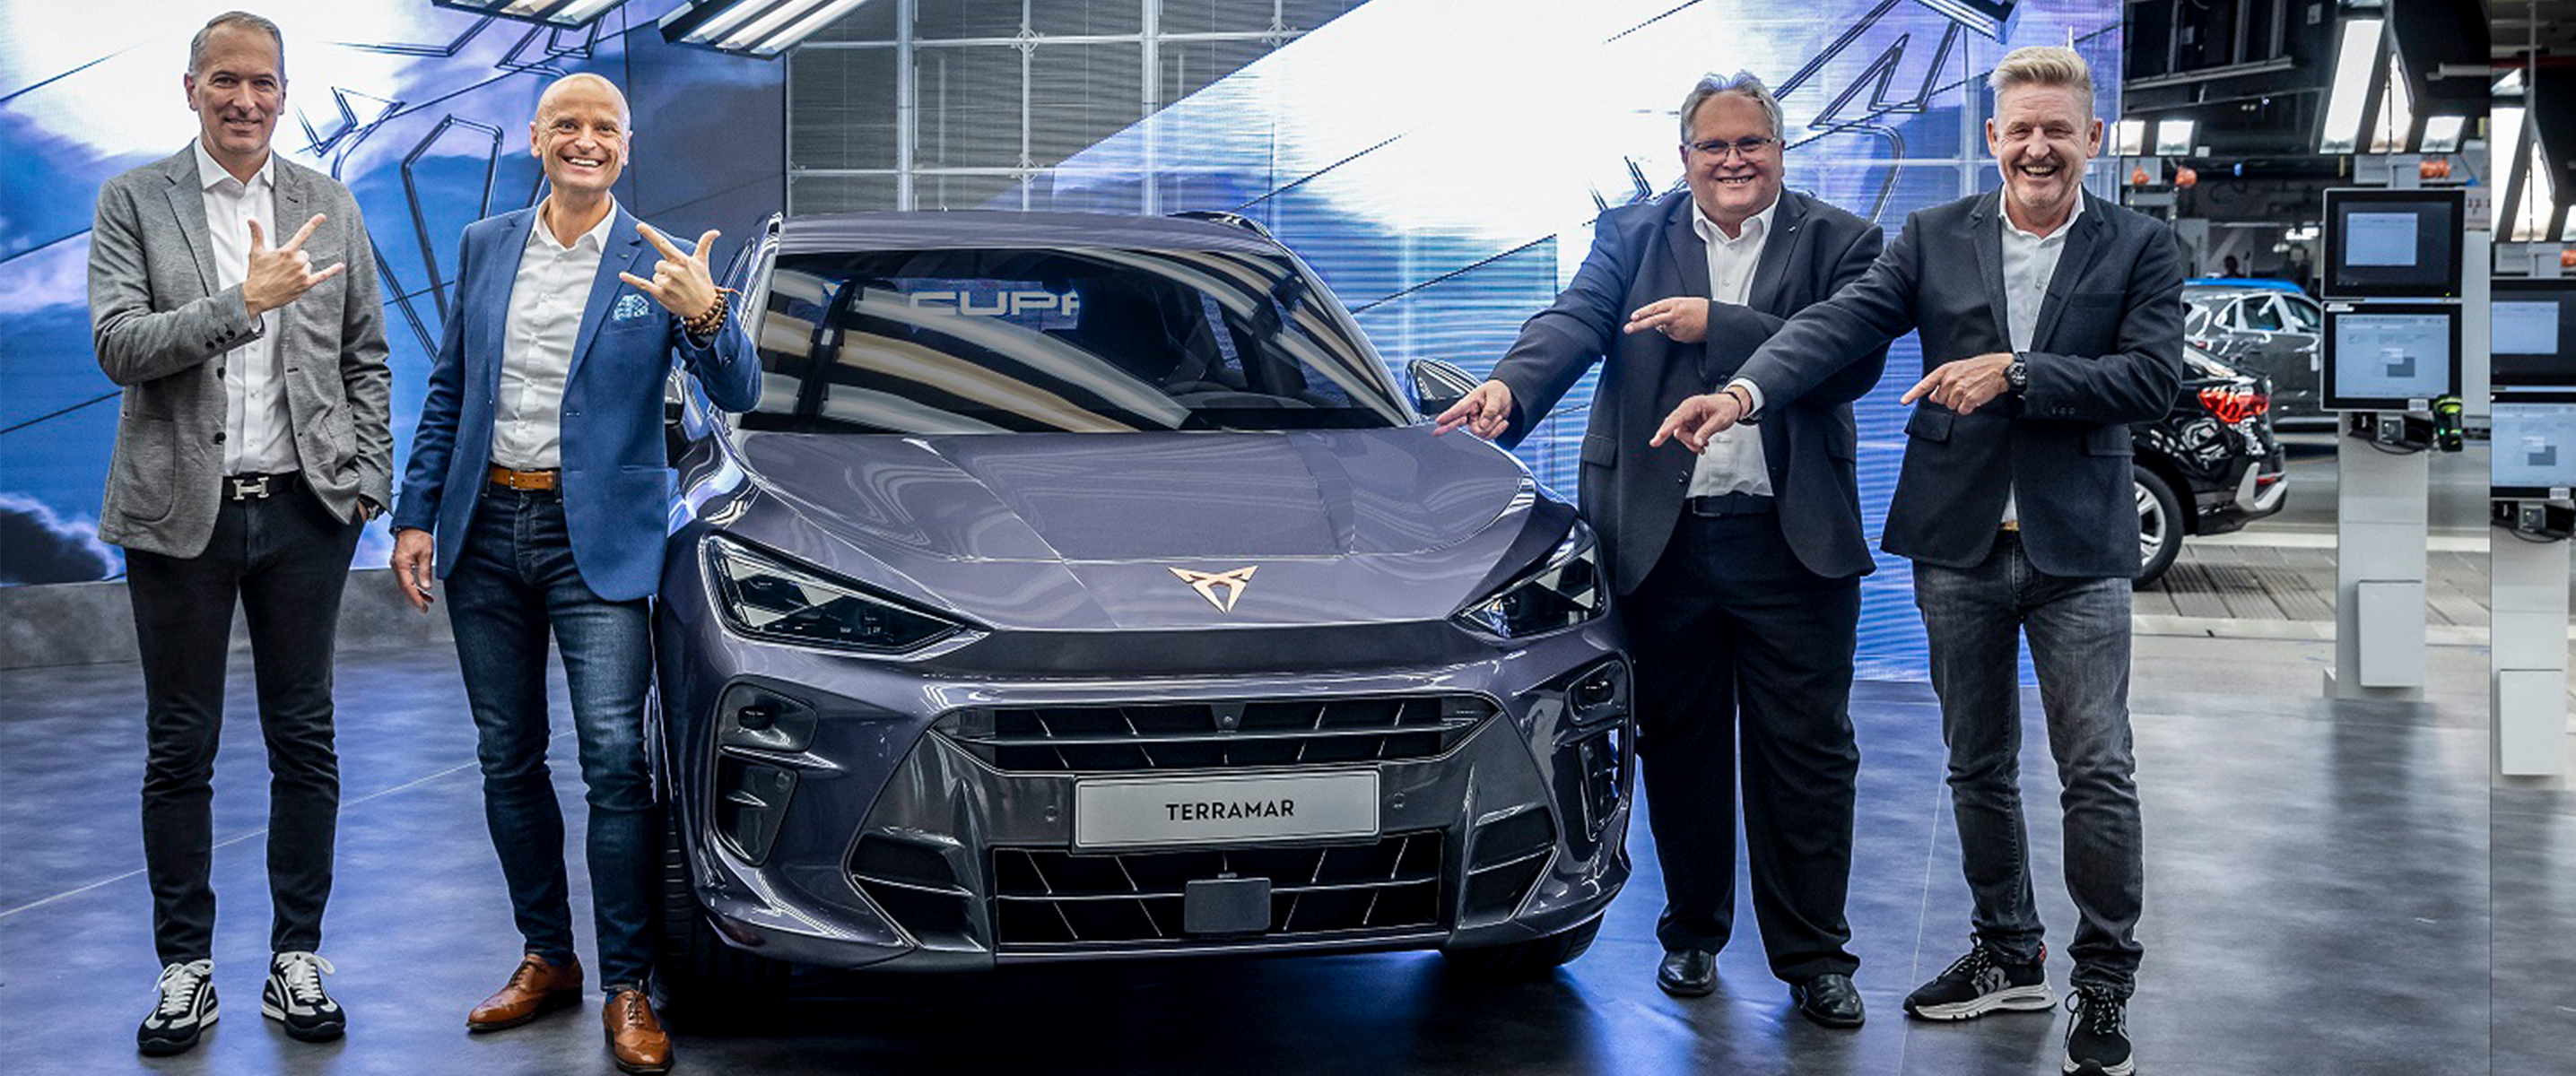 Η CUPRA αποκαλύπτει το CUPRA Terramar στους υπαλλήλους της Audi Hungaria που θα συμμετέχουν στην παραγωγή του